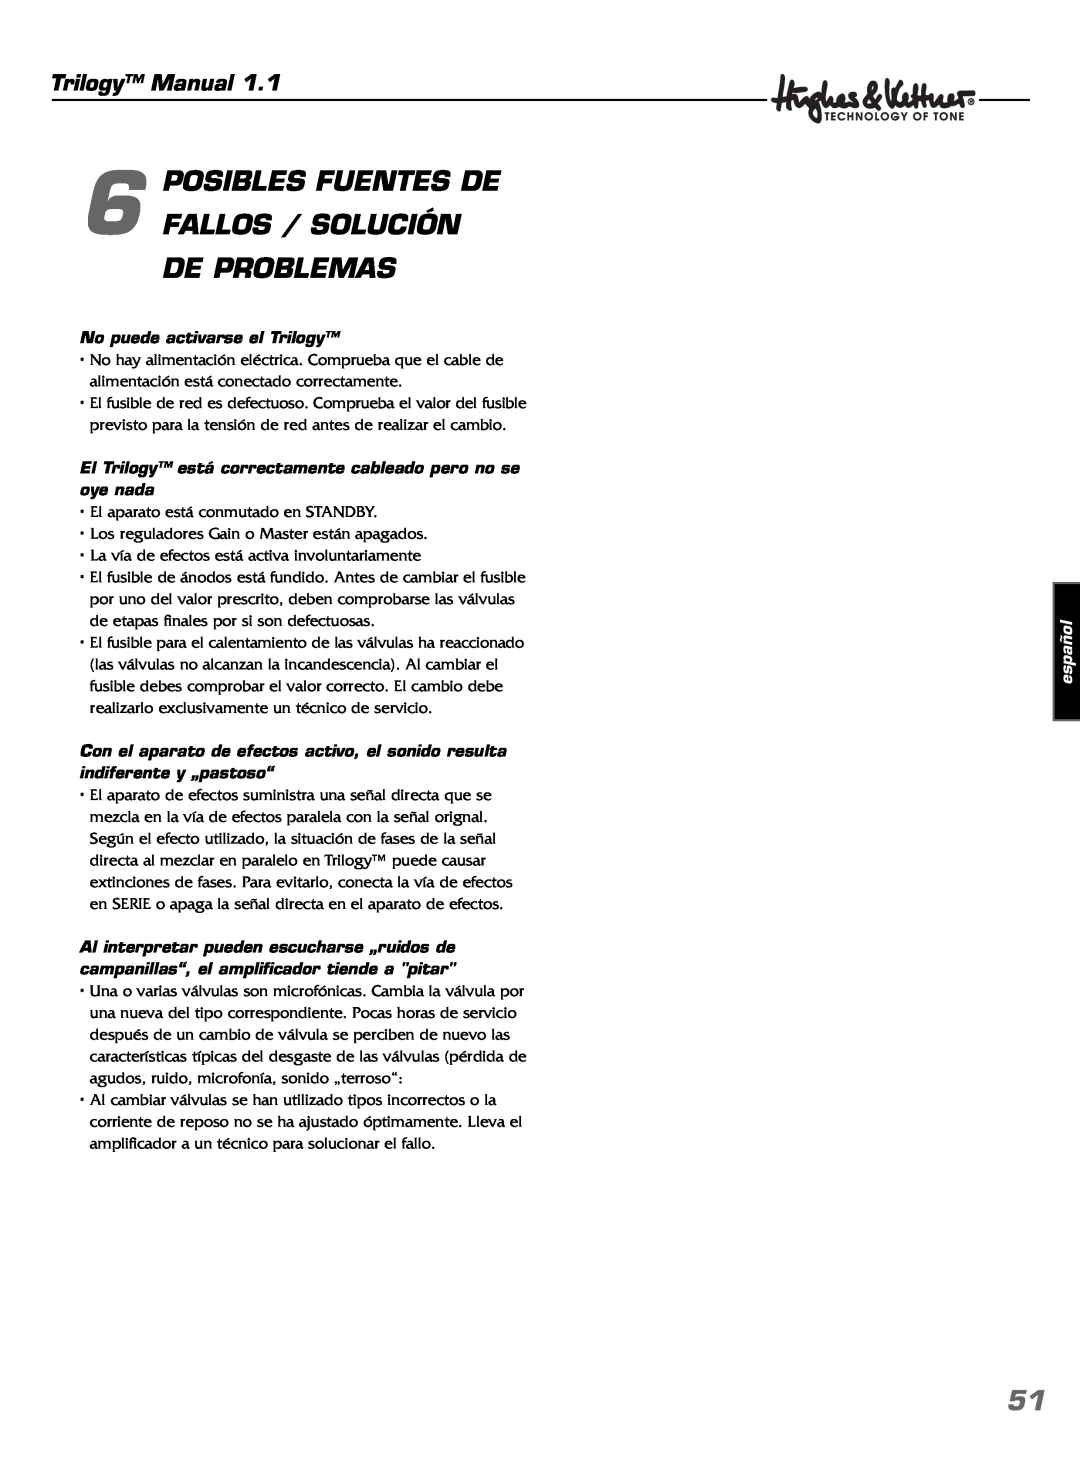 Hughes & Kettner TrilogyTM manual POSIBLES FUENTES DE 6 FALLOS / SOLUCIÓN, De Problemas, Trilogy Manual, español 